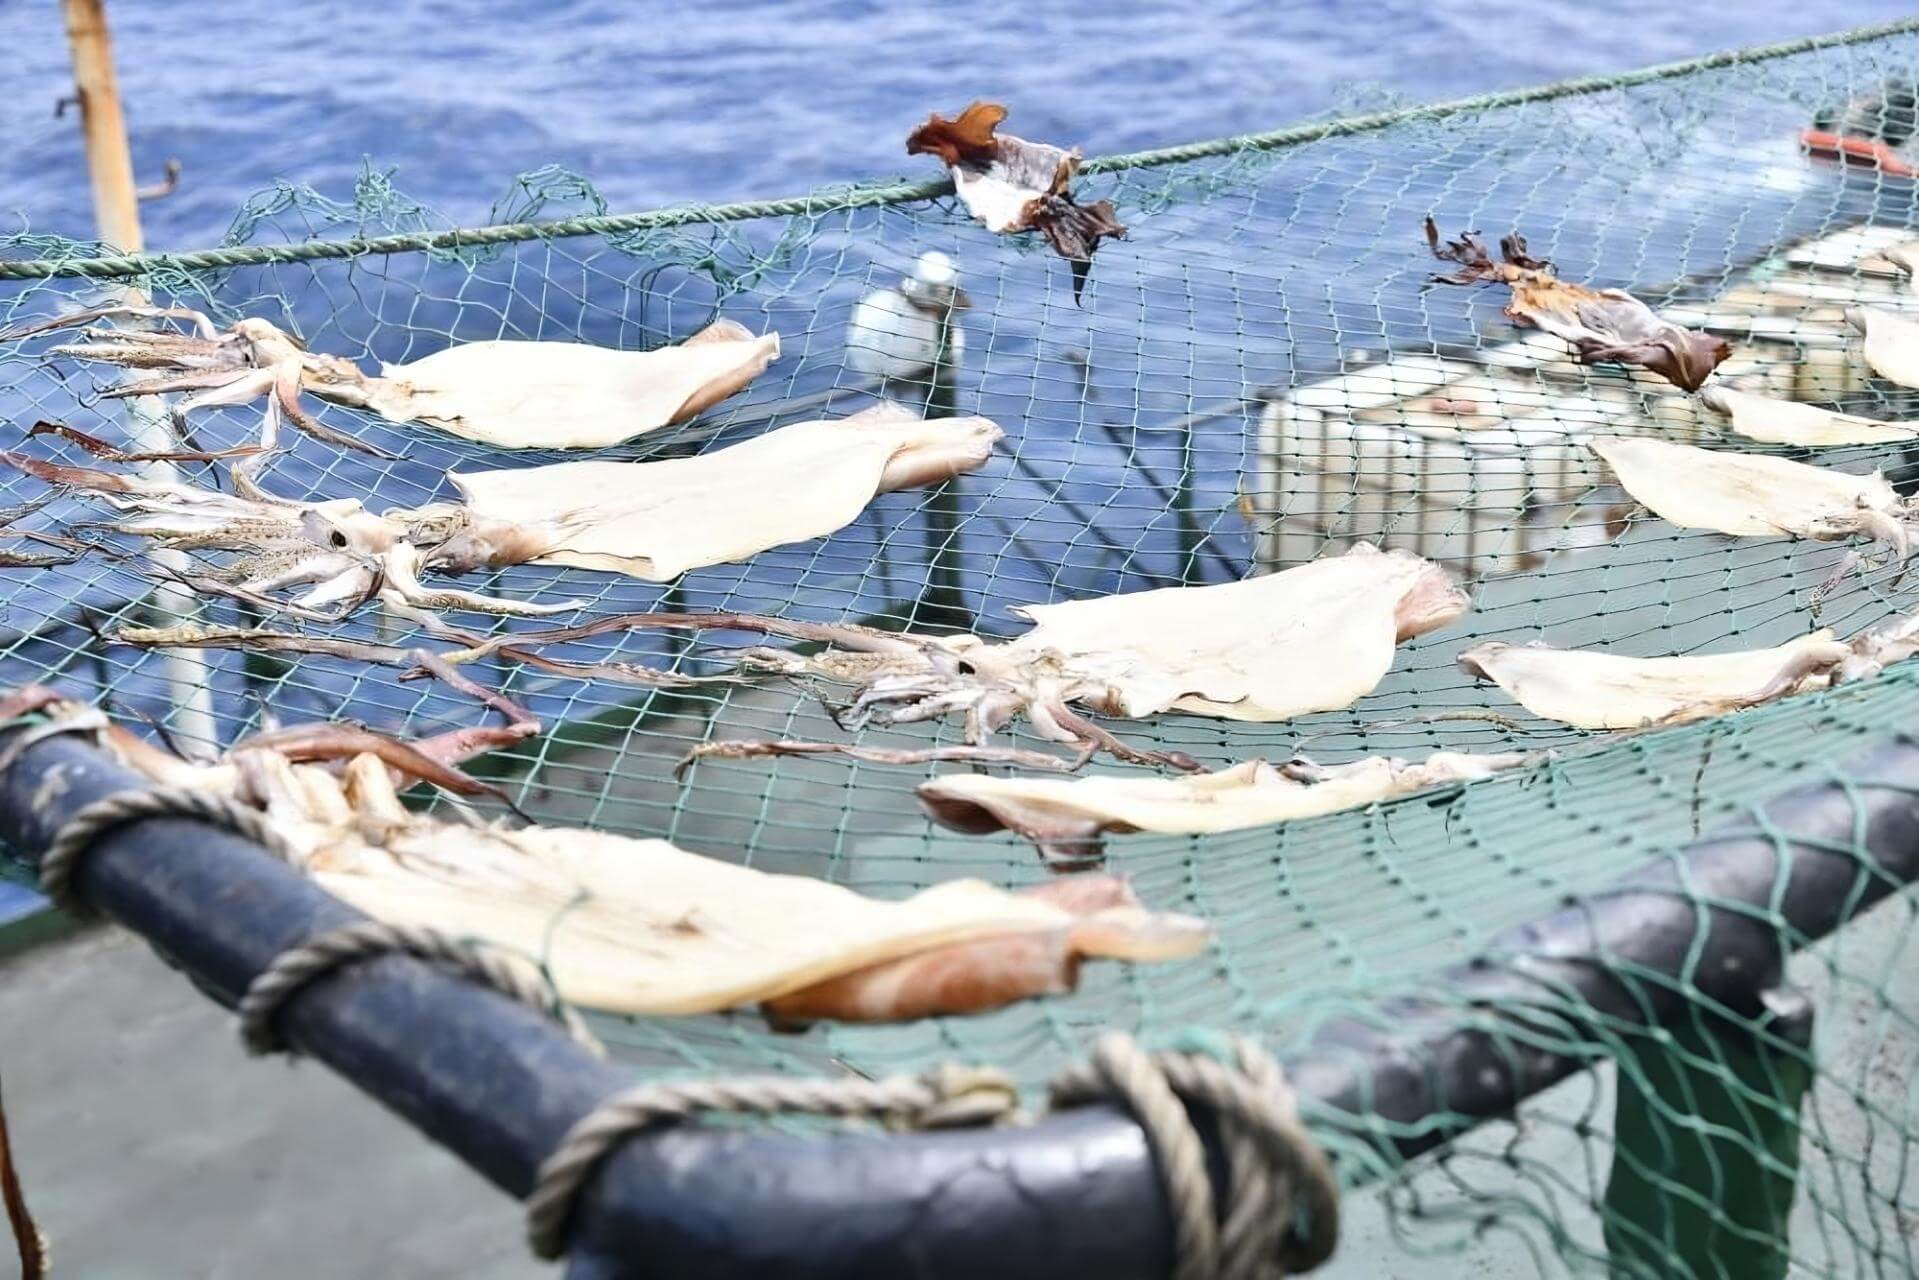 FLOTA GIGANTE. En 2020, China pescaba más de 2.200 millones de kilos de mariscos al año, que en su mayoría era calamar, según varias fuentes. Ningún otro país se acerca a esos valores. 